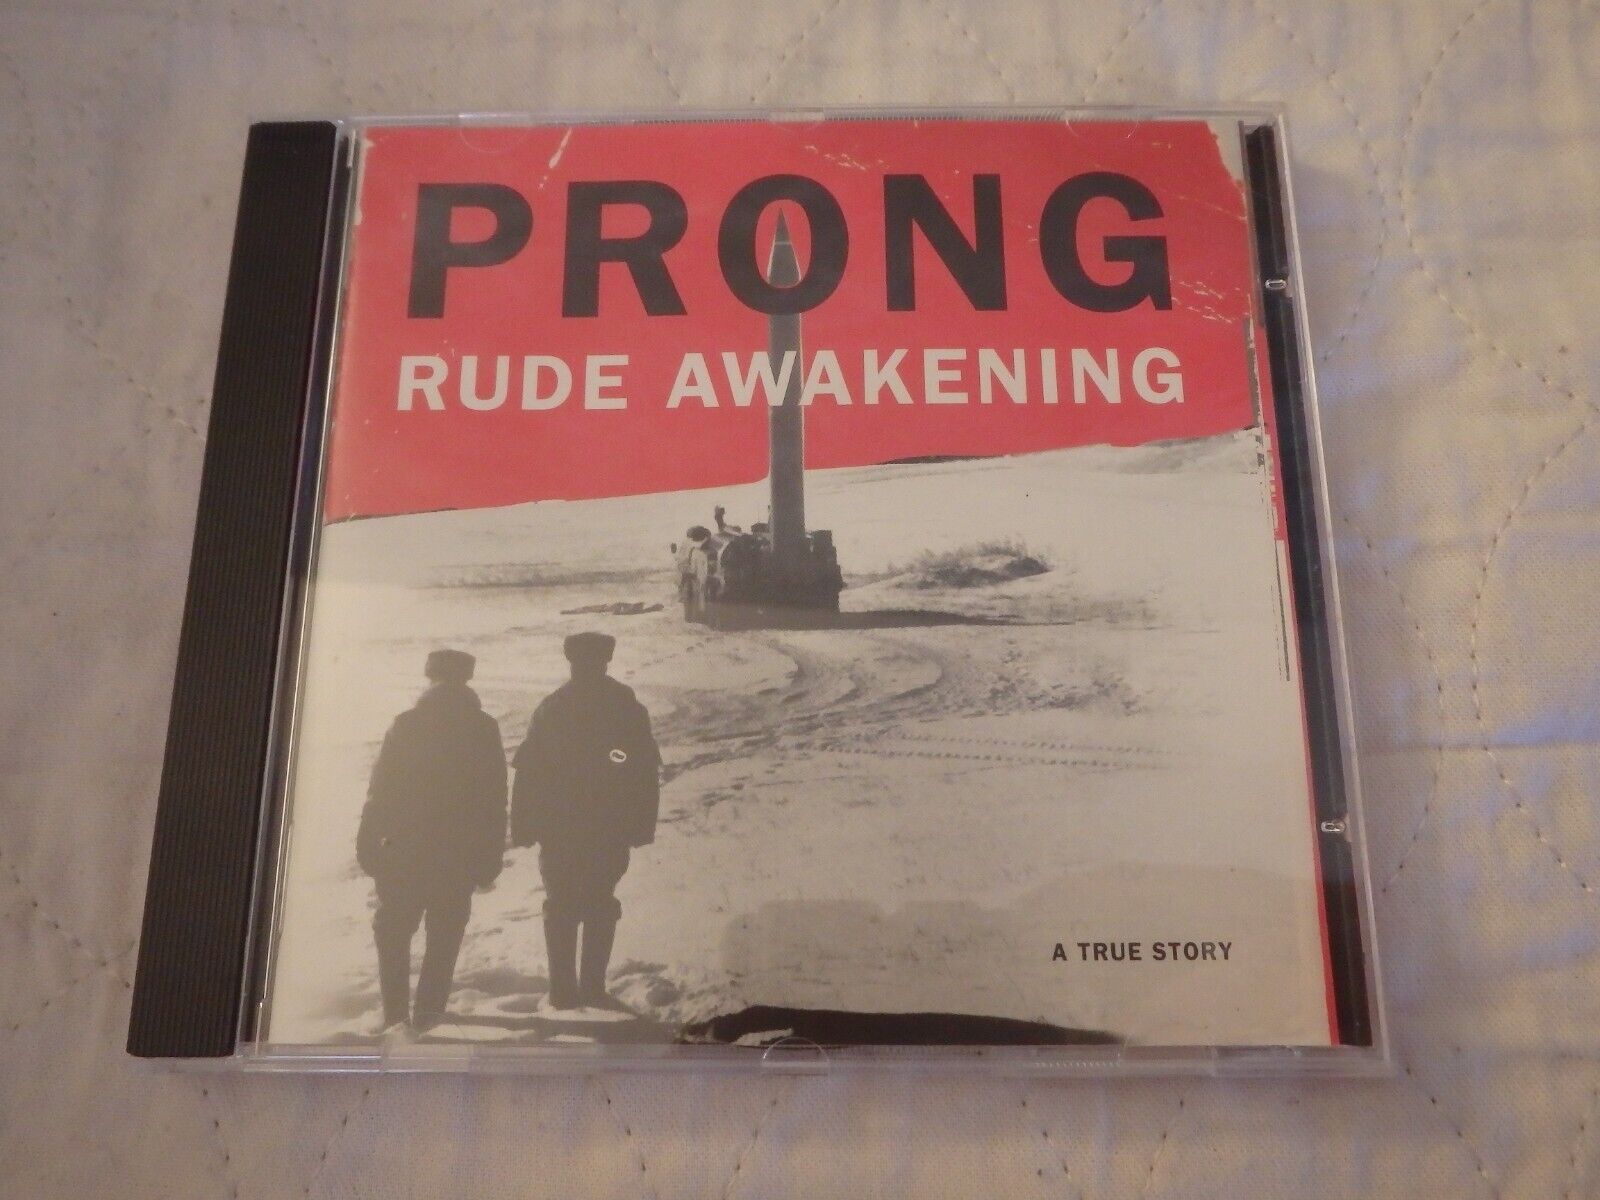 PRONG RUDE AWAKENING A TRUE STORY 1996 SONY